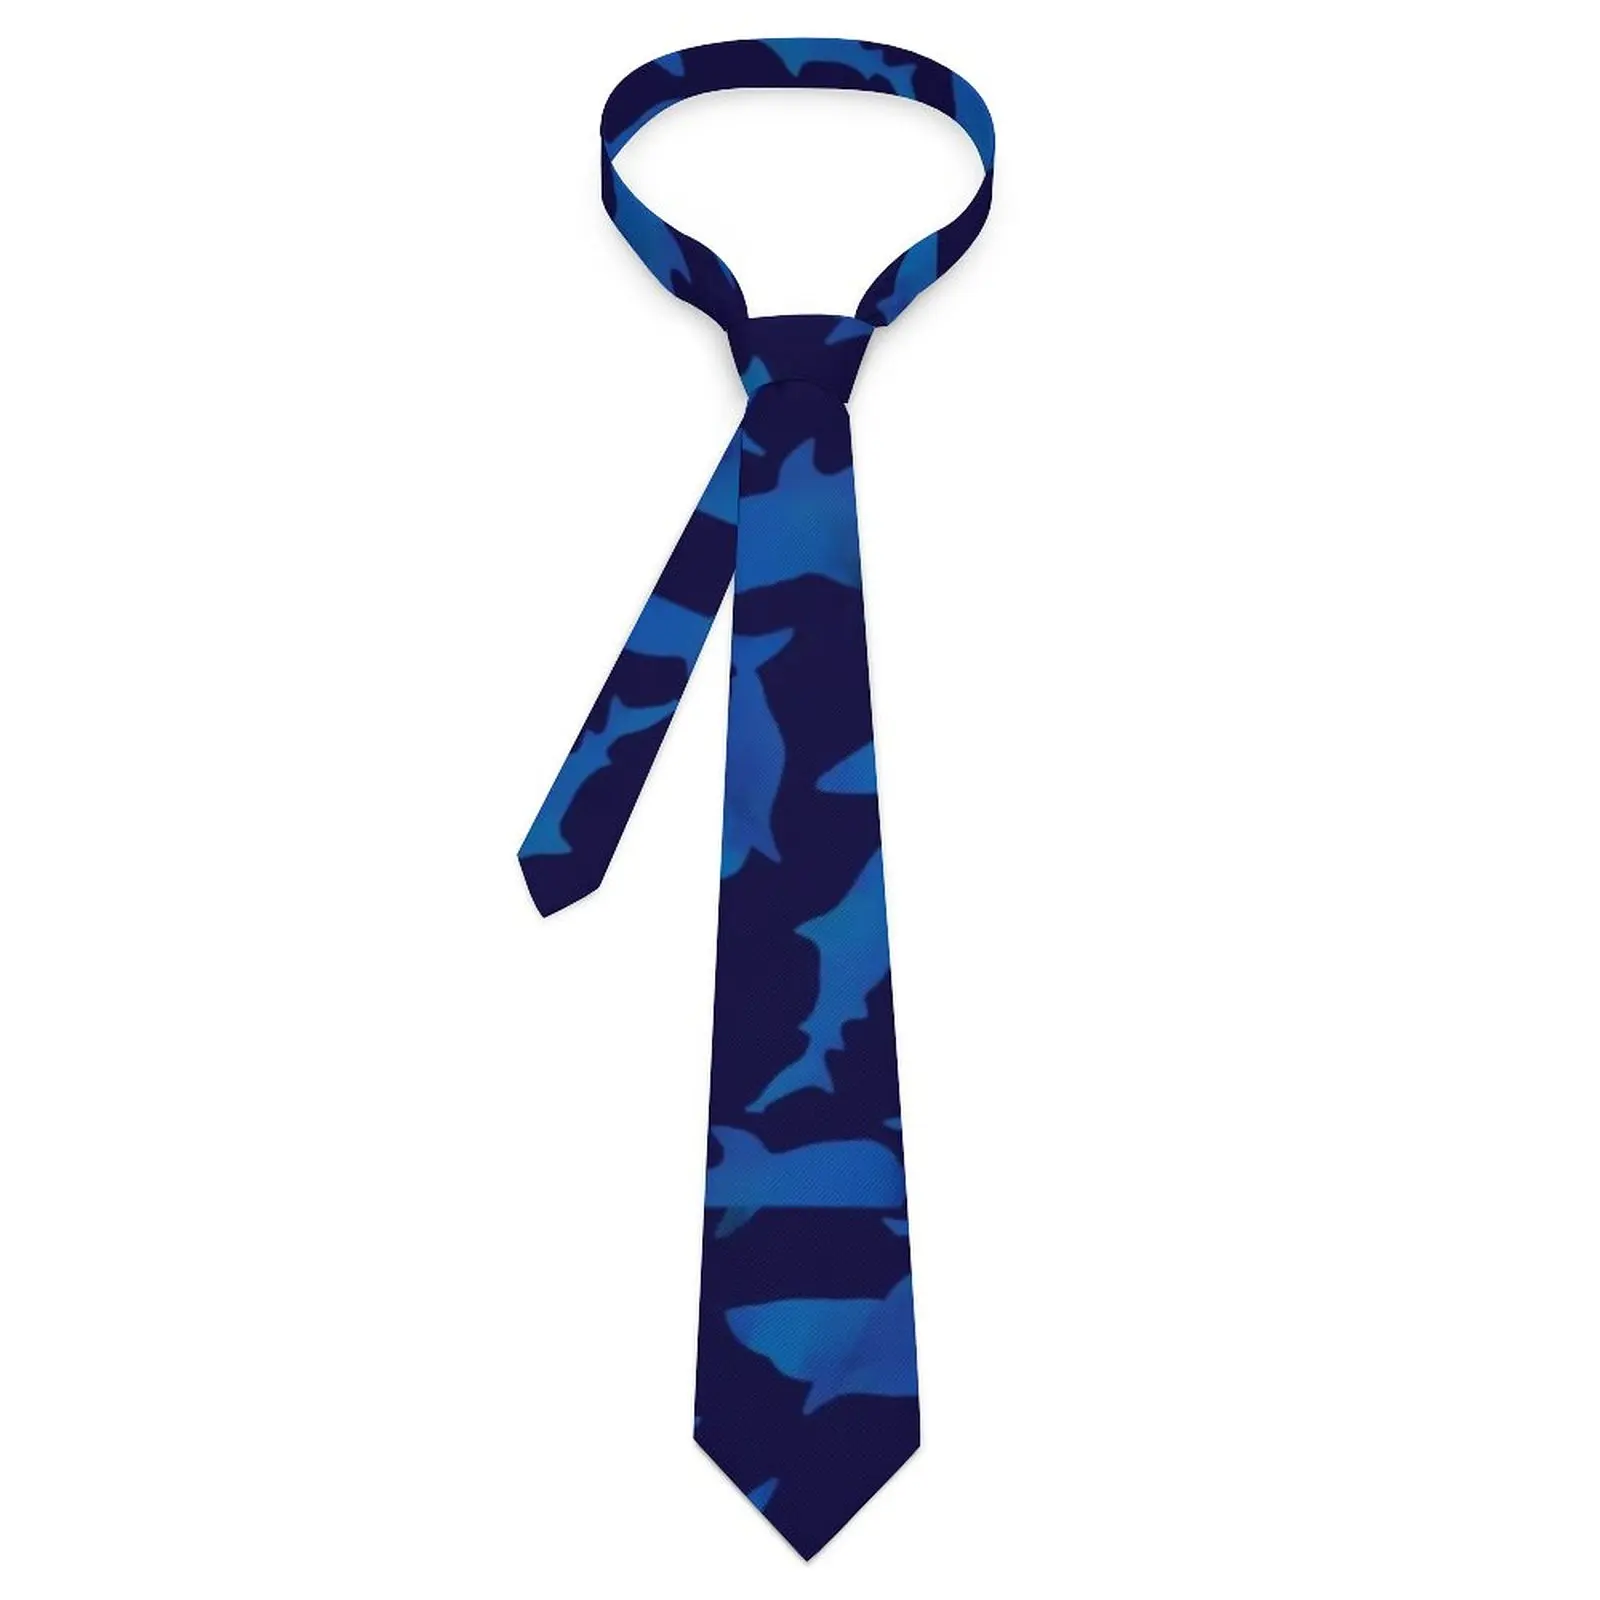 

Синий галстук с акулой, повседневная одежда с животным принтом, галстуки для шеи, винтажный крутой галстук для мужчин, галстук для воротника с узором, галстук, подарок на день рождения